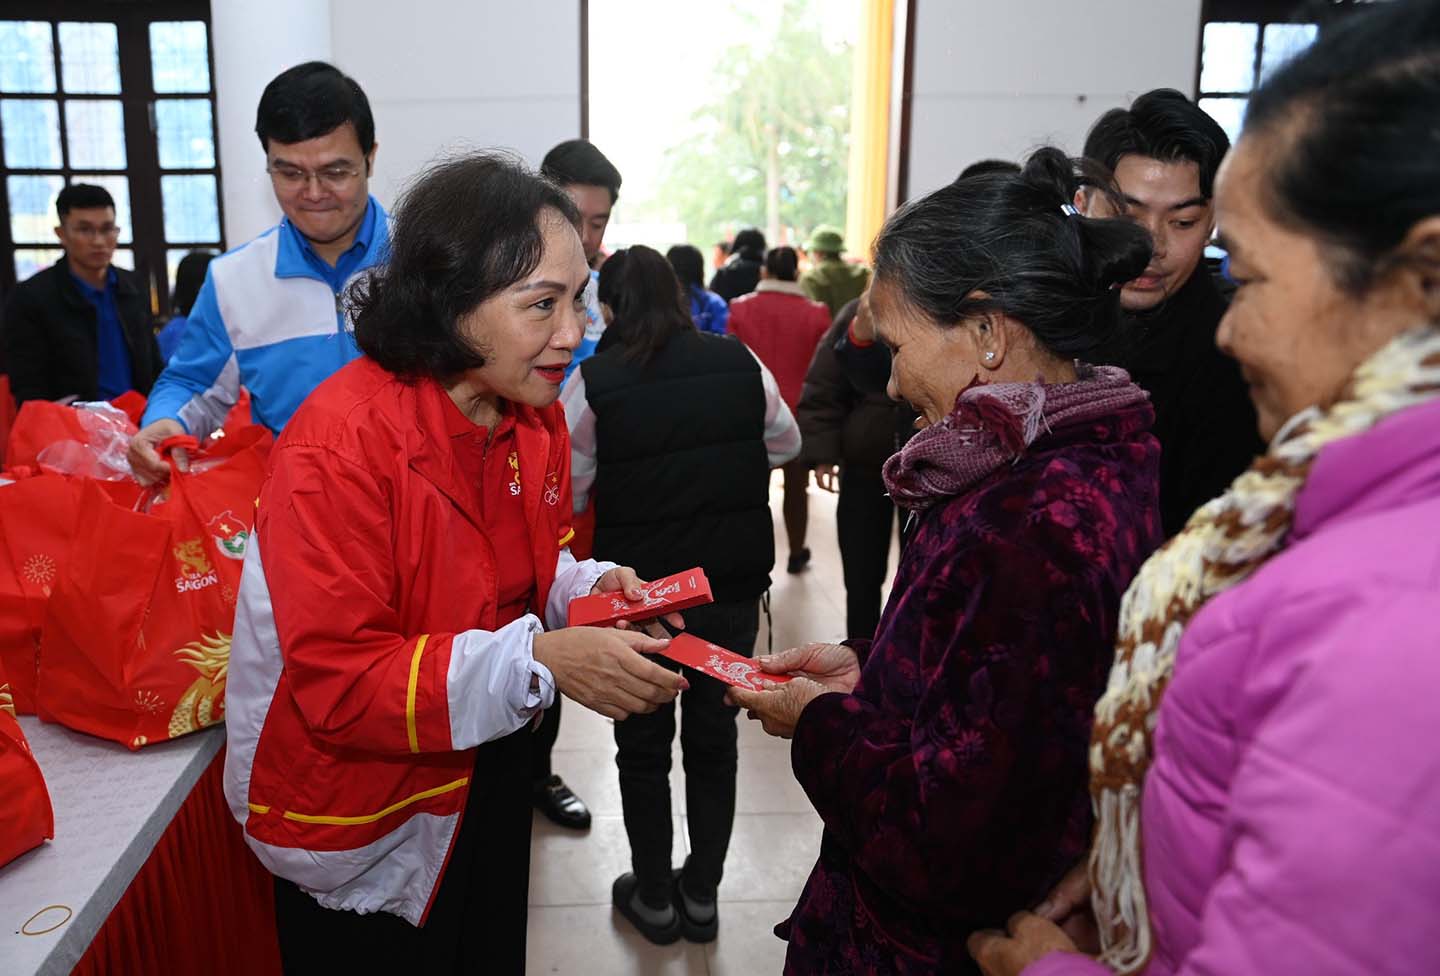 Bà Trần Kim Nga gửi lời cảm ơn đến Trung ương Đoàn Thanh niên cộng sản Hồ Chí Minh, đối tác chiến lược của chương trình, cảm ơn Tỉnh đoàn Nghệ An, đơn vị tổ chức sự kiện đã nhiệt tình hỗ trợ, chung tay để tổ chức thành công sự kiện ngày hôm nay.